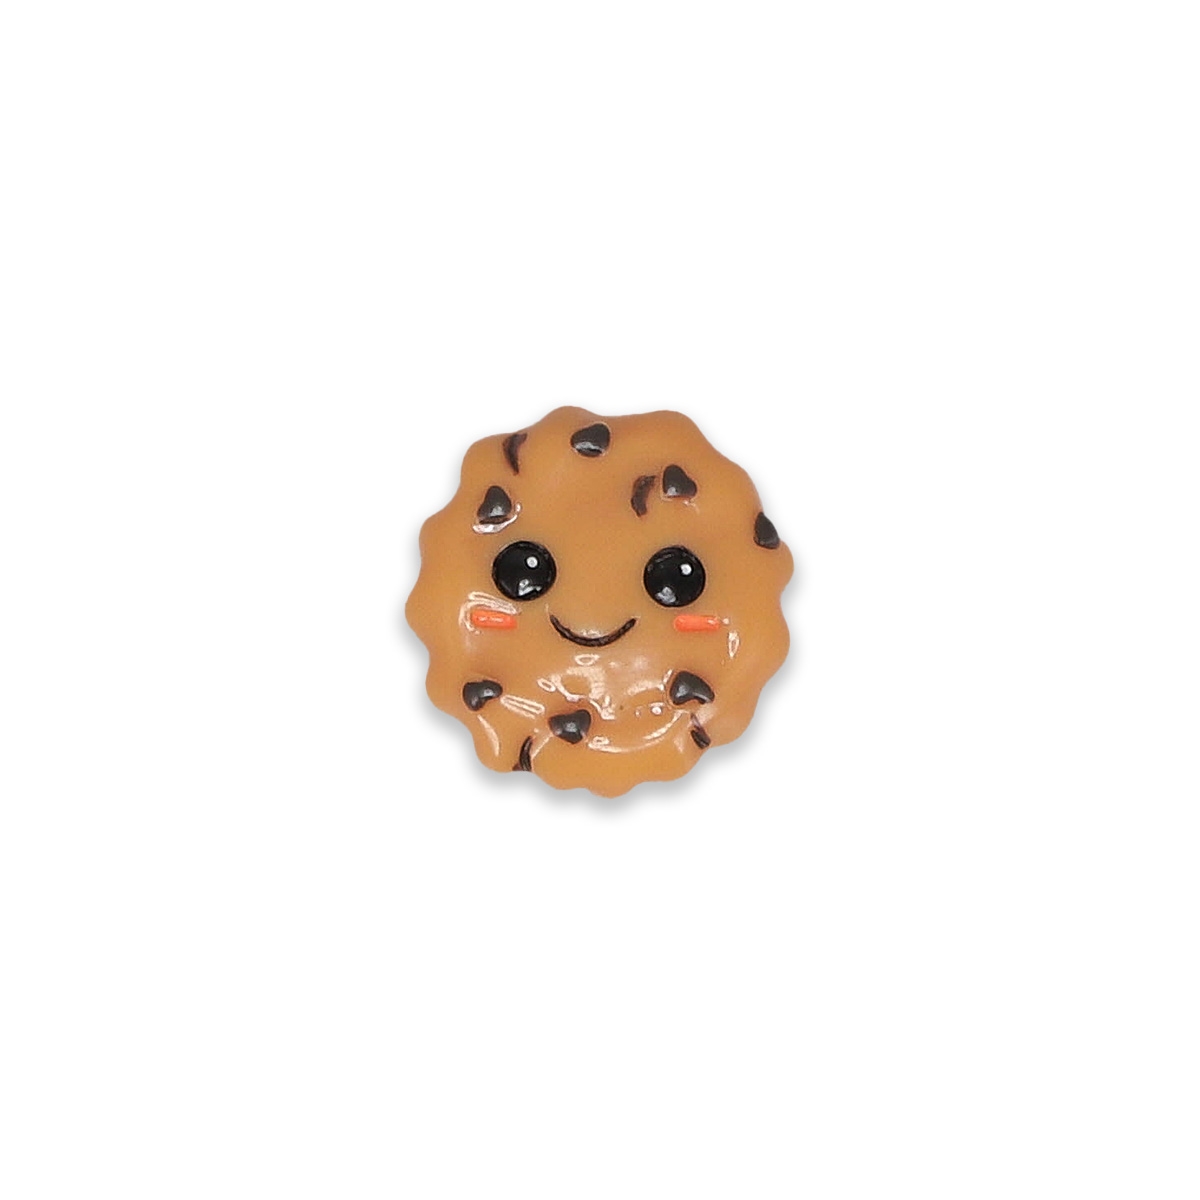 Jibbitz Accessories Jibbitz Chocolate Chip Cookie